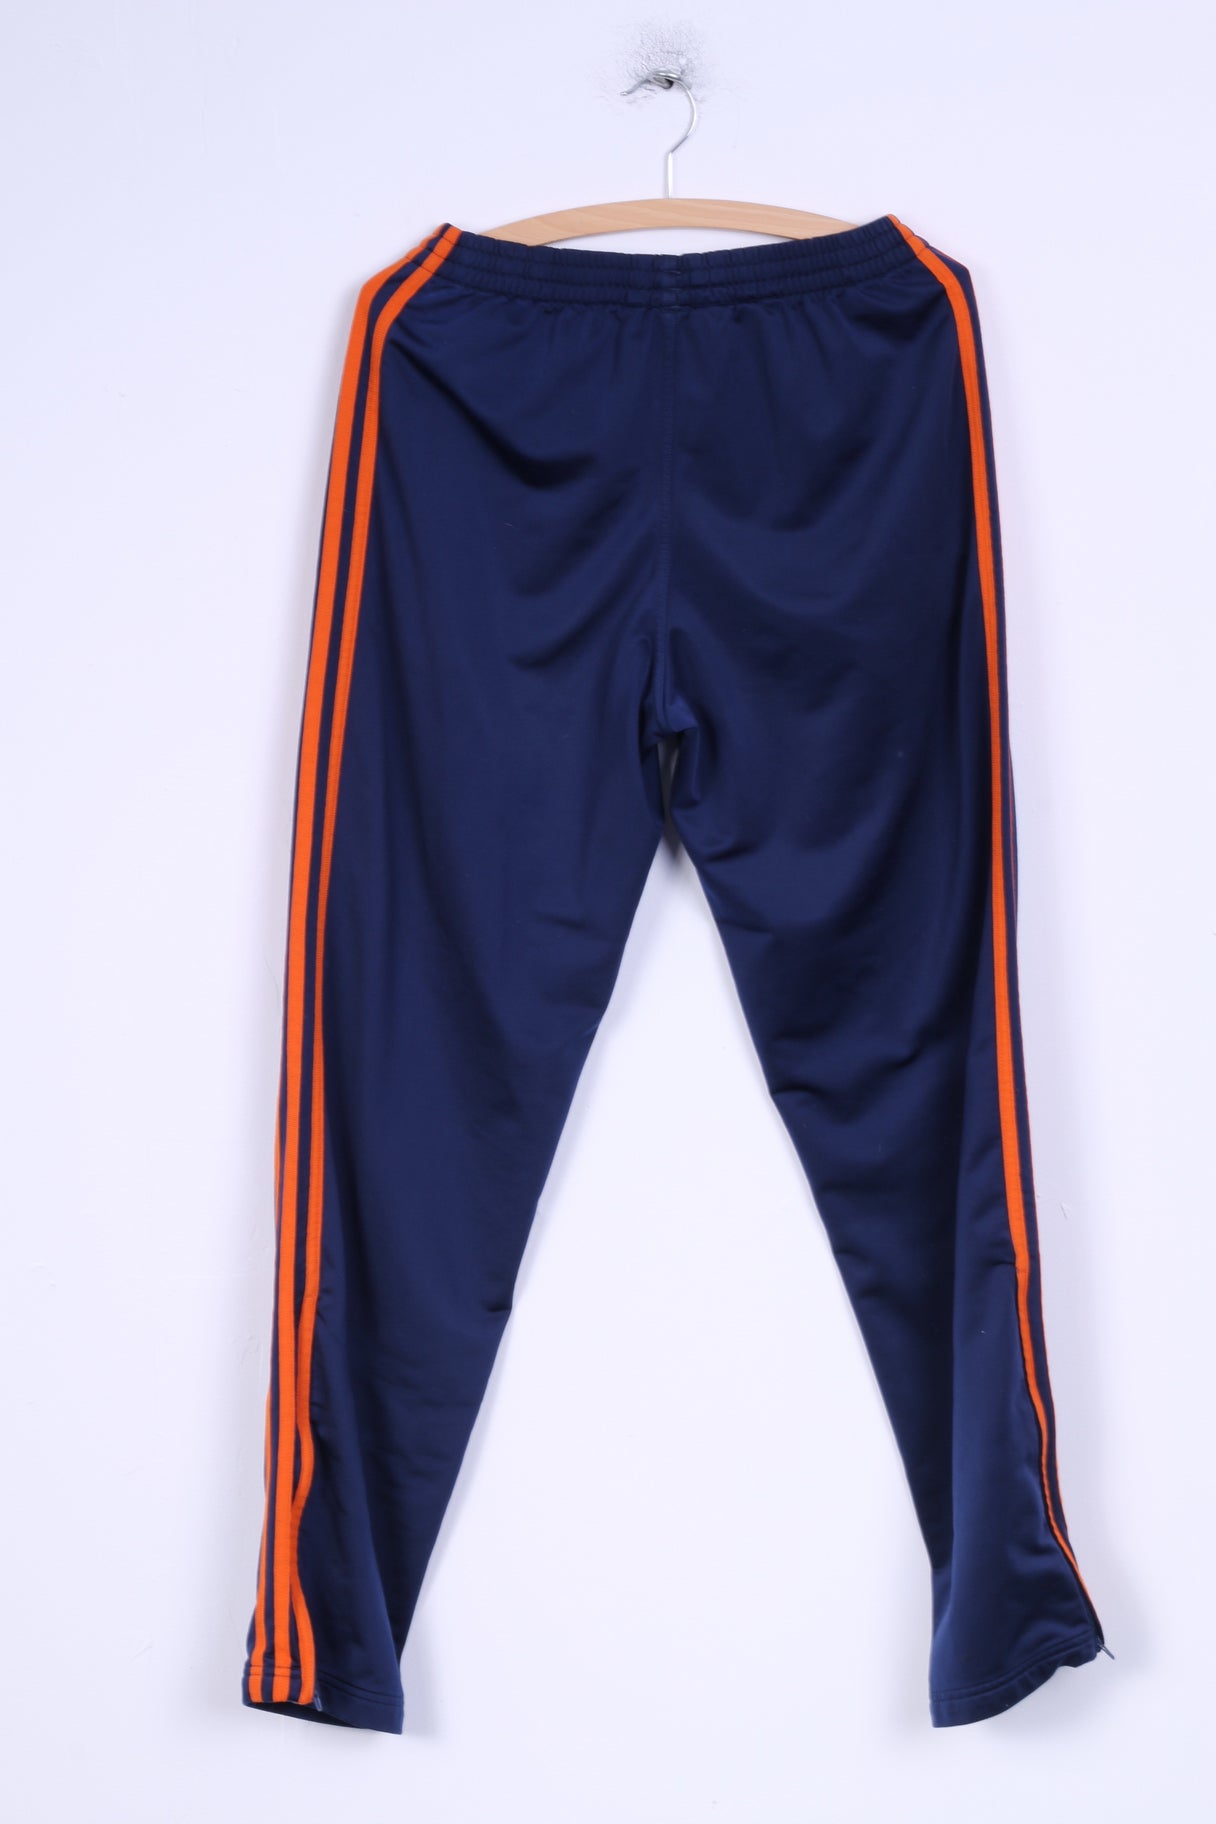 Adidas Boys 16 Age 176 Tracksuit Shiny Blue Vintage '90 Sport Training Set